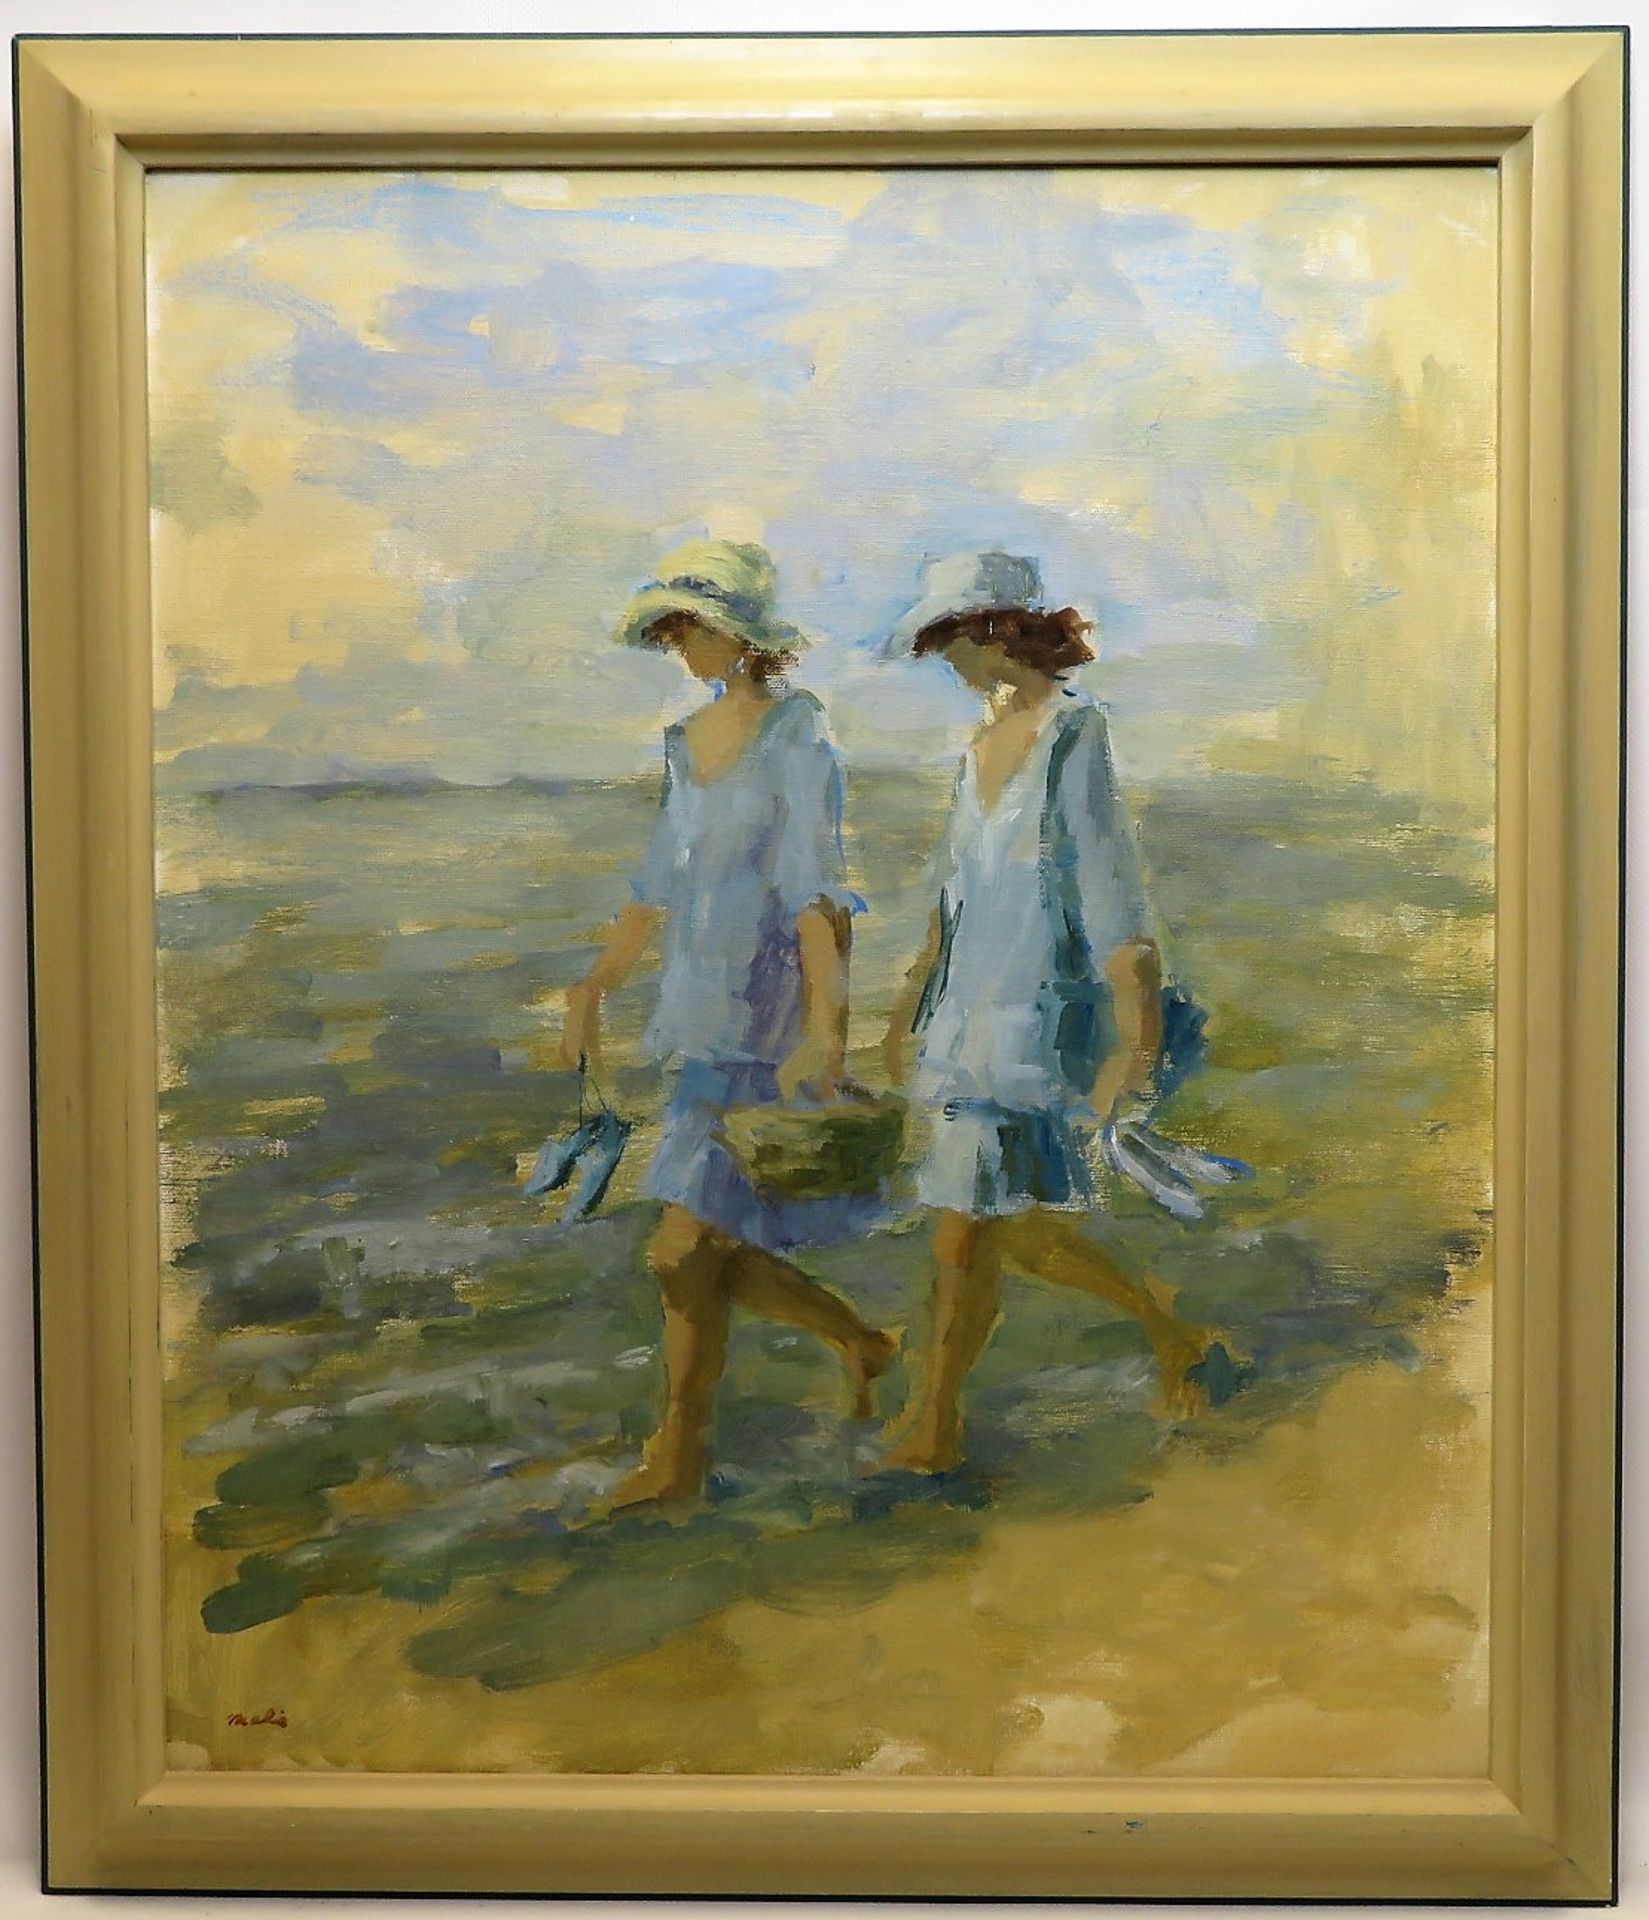 Baehr, Mali, "Zwei spazierende Mädchen am Strand", li.u.sign., verso dat. 1996, Öl/Leinwand, 59 x 5